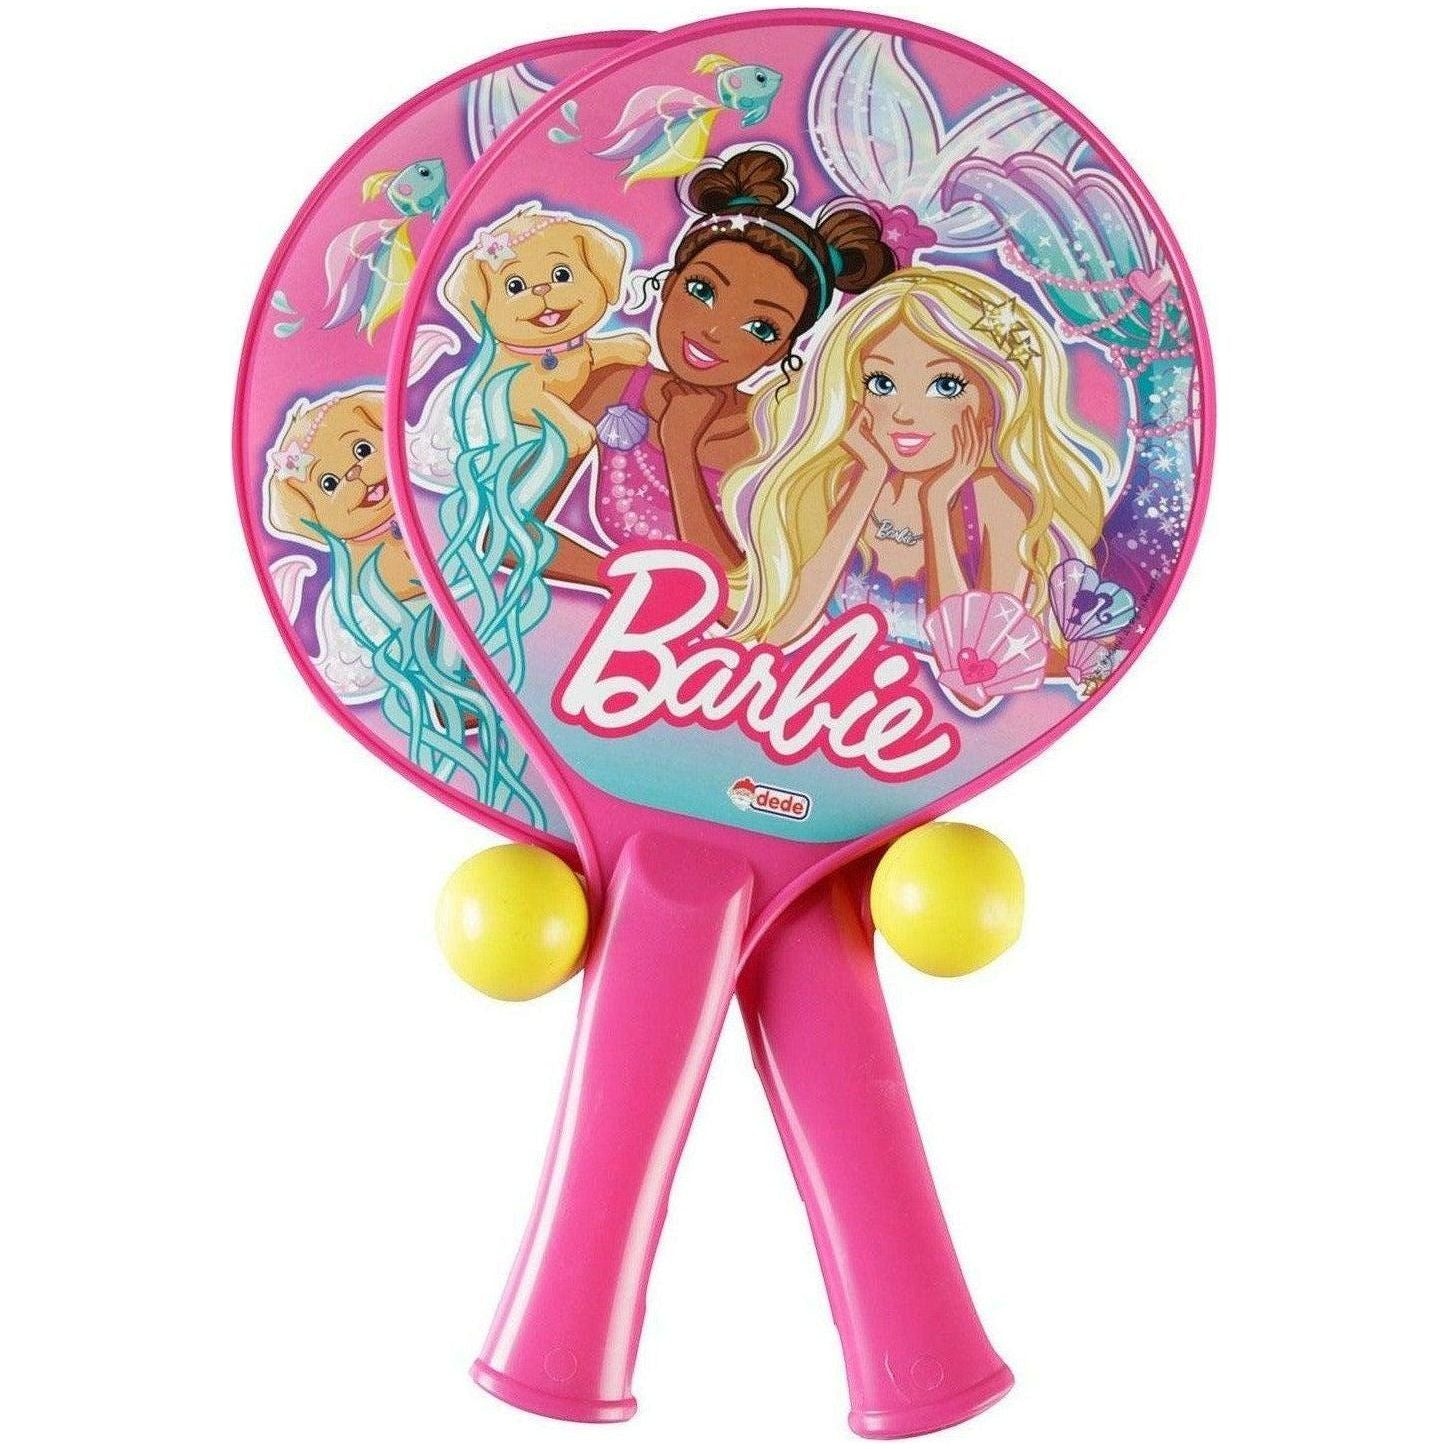 Dede 1983 Barbie Racket Set For Girls - BumbleToys - 4+ Years, 5-7 Years, 6+ Years, Balls, Barbie, Cecil, Girls, Kids Sports & Balls, rocket, Roleplay